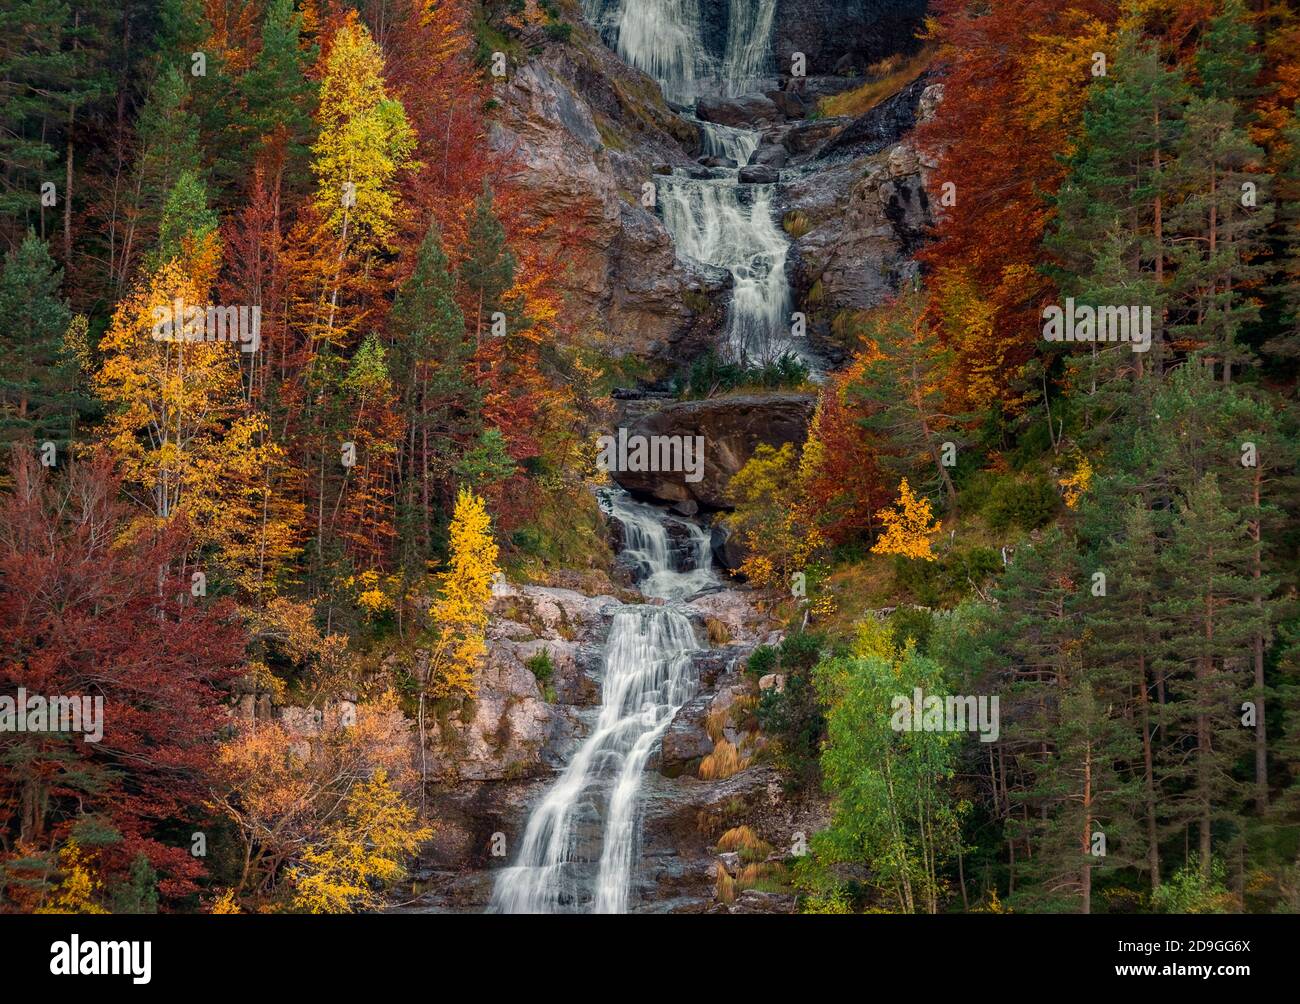 Belles couleurs de forêt d'automne. Pyrénées, Espagne Banque D'Images